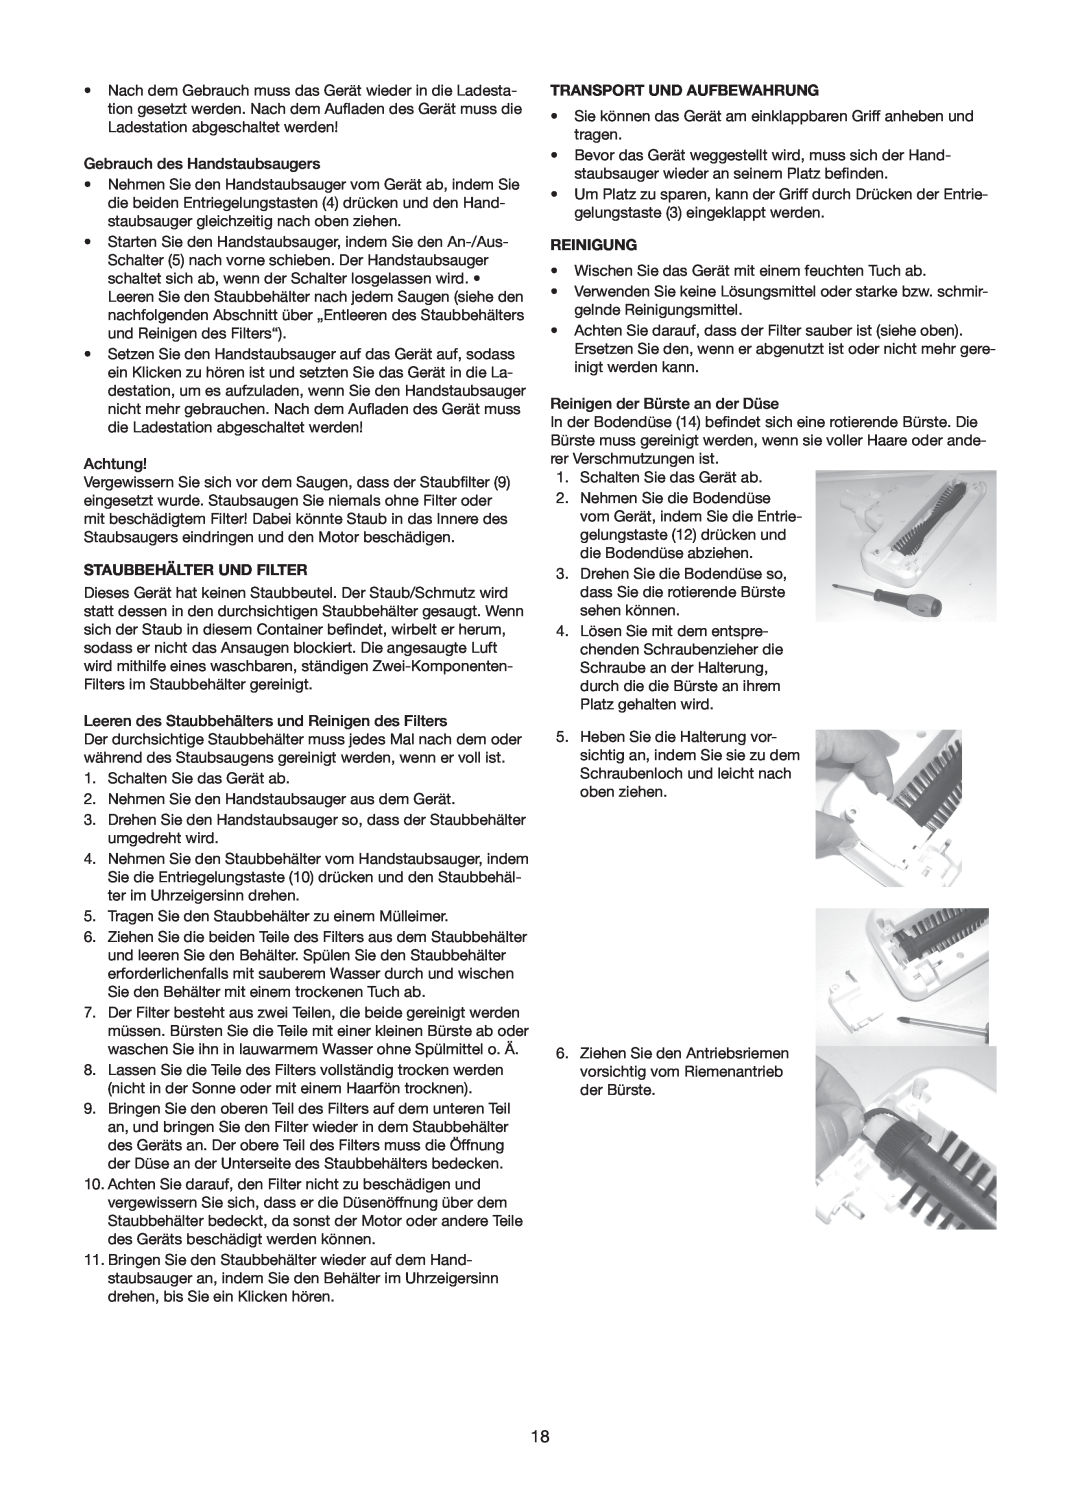 Melissa 640-110/114/127 manual Staubbehälter Und Filter, Transport Und Aufbewahrung, Reinigung 